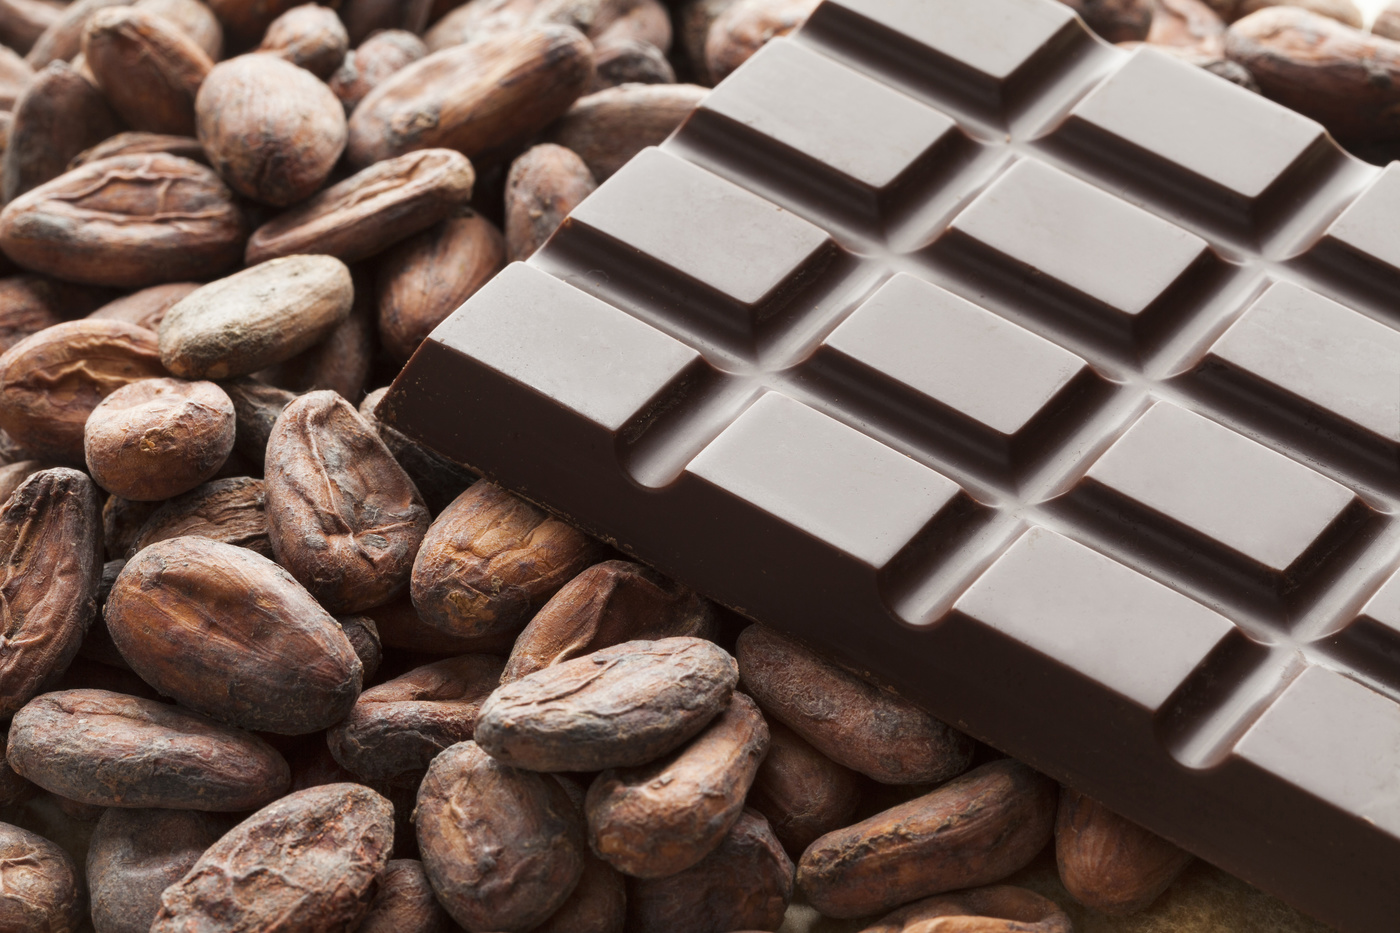 オーガニックチョコレートおすすめ8選 砂糖不使用や高級チョコも 通販で手軽に マイナビおすすめナビ